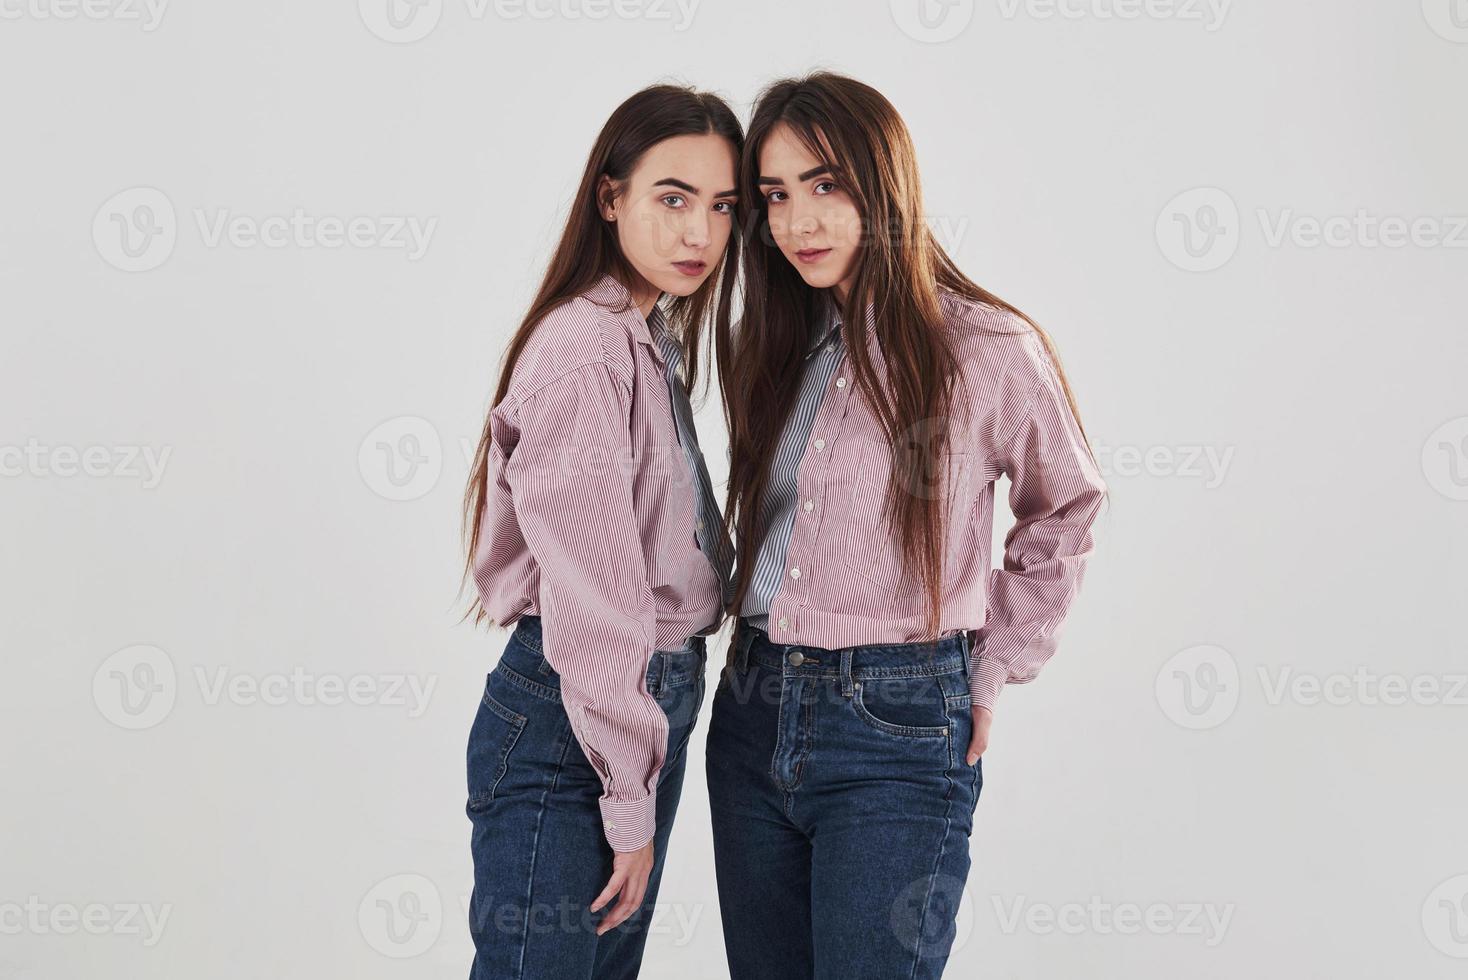 toujours ensemble. deux soeurs jumelles debout et posant en studio avec fond blanc photo